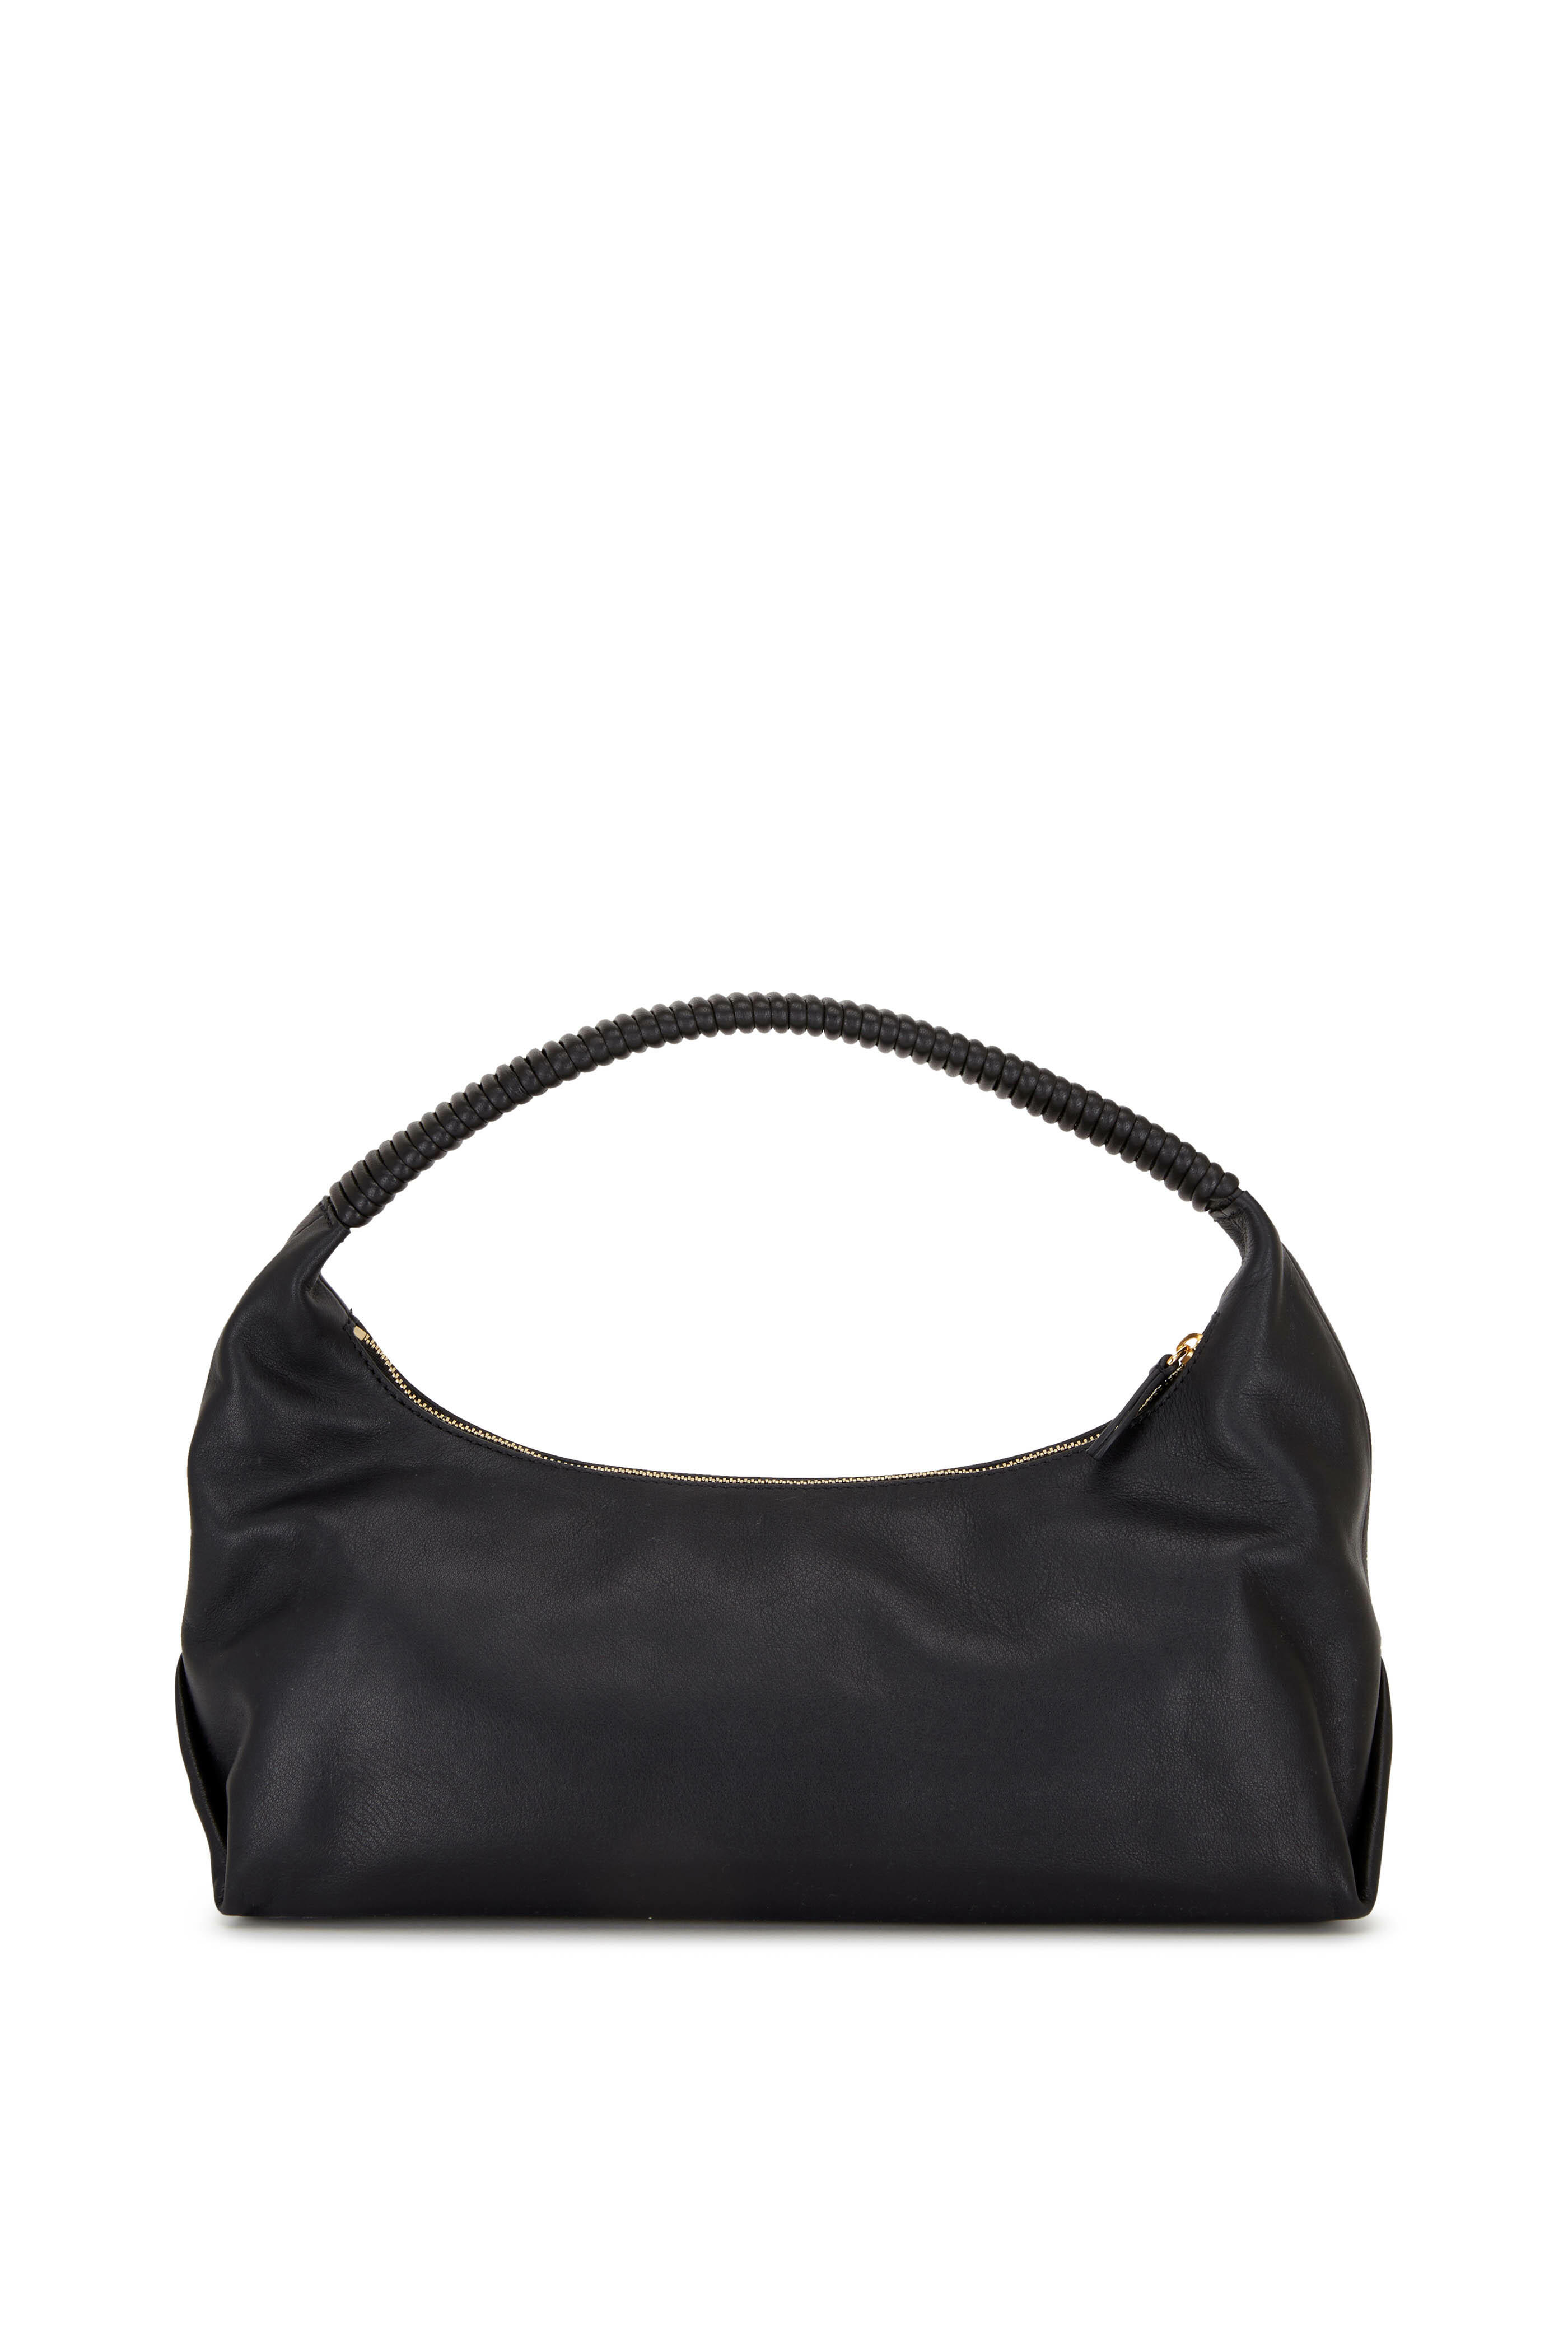 Khaite - Remi Black Leather Hobo Bag | Mitchell Stores